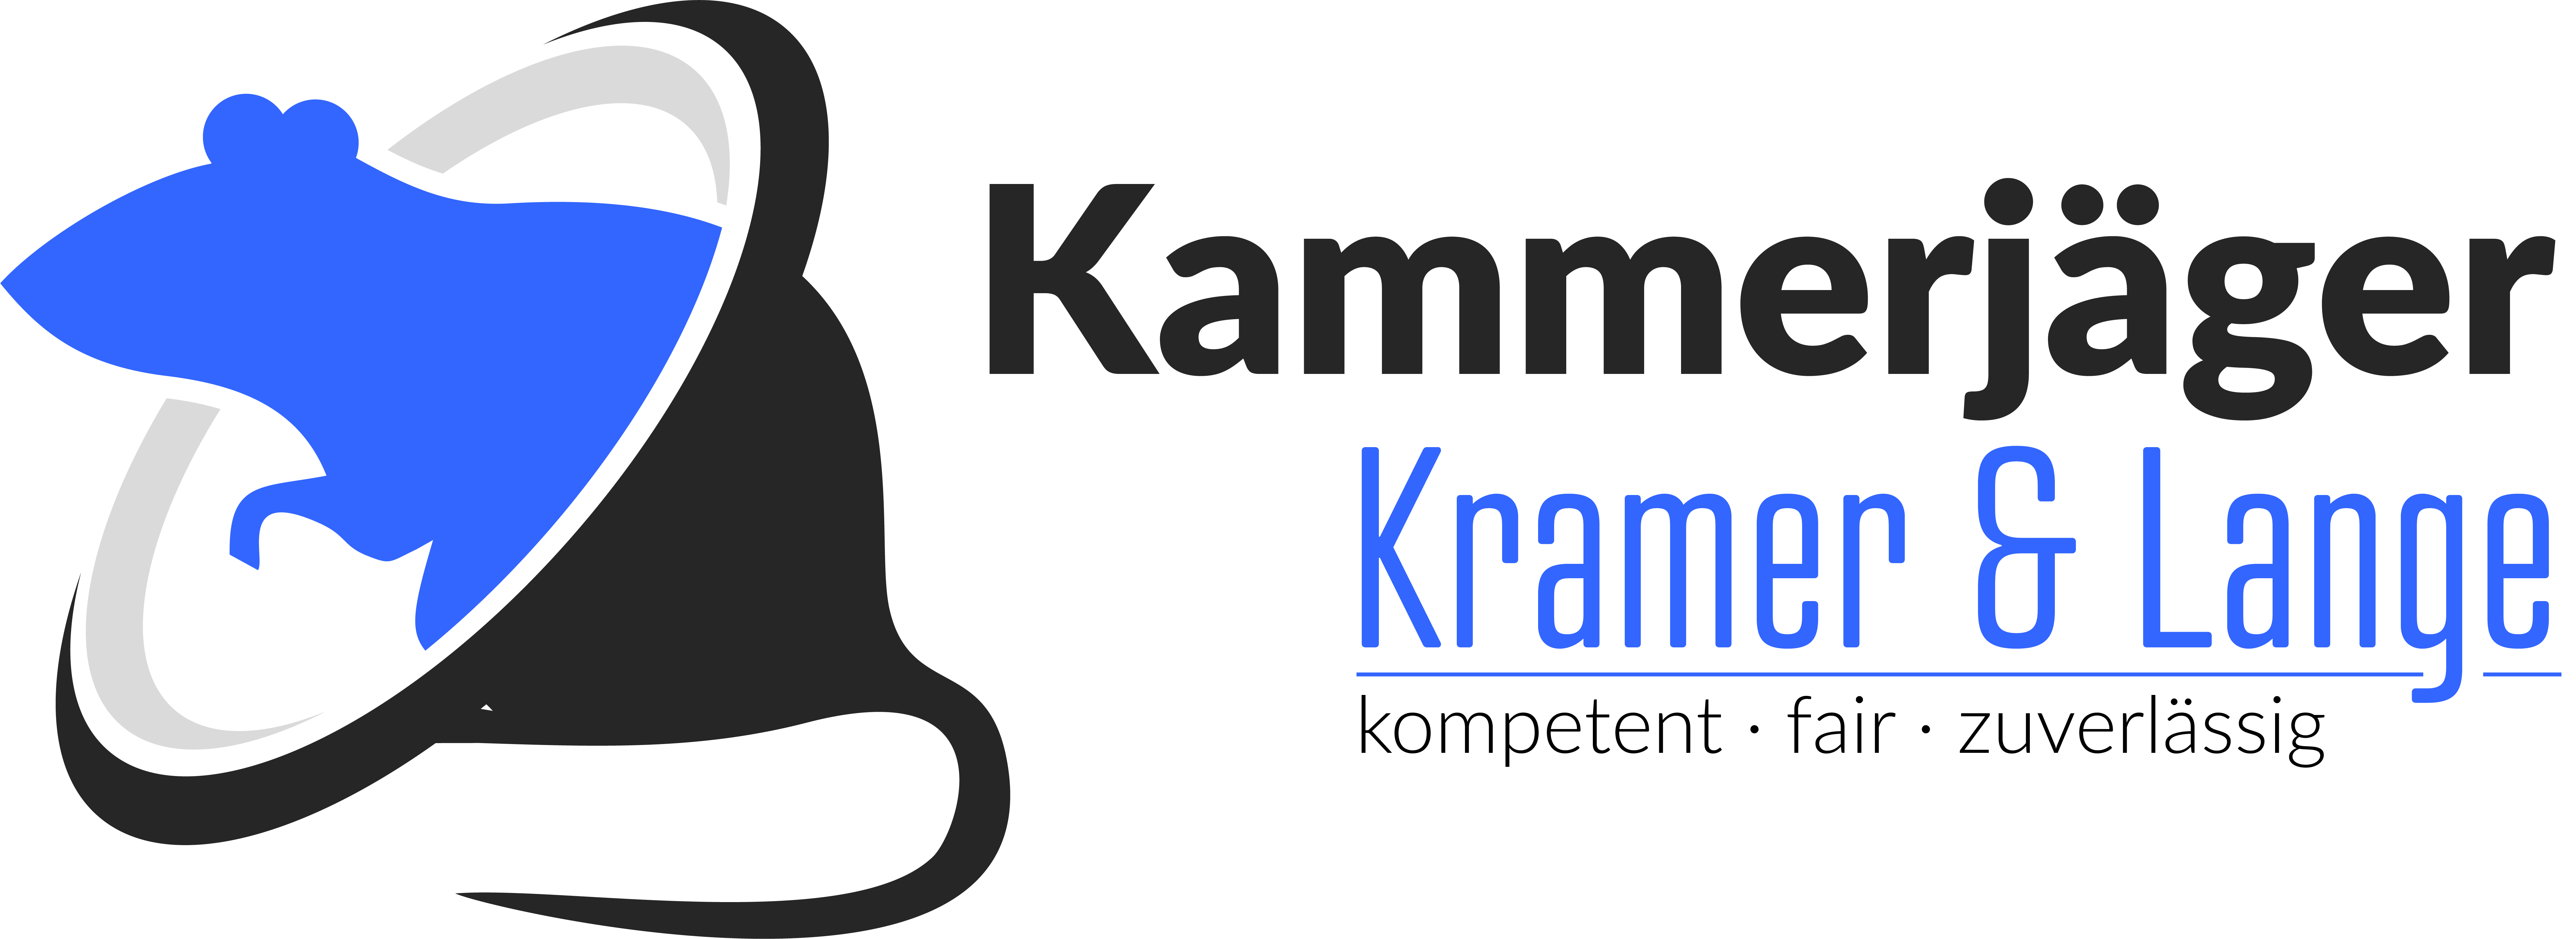 Kramer und Lange